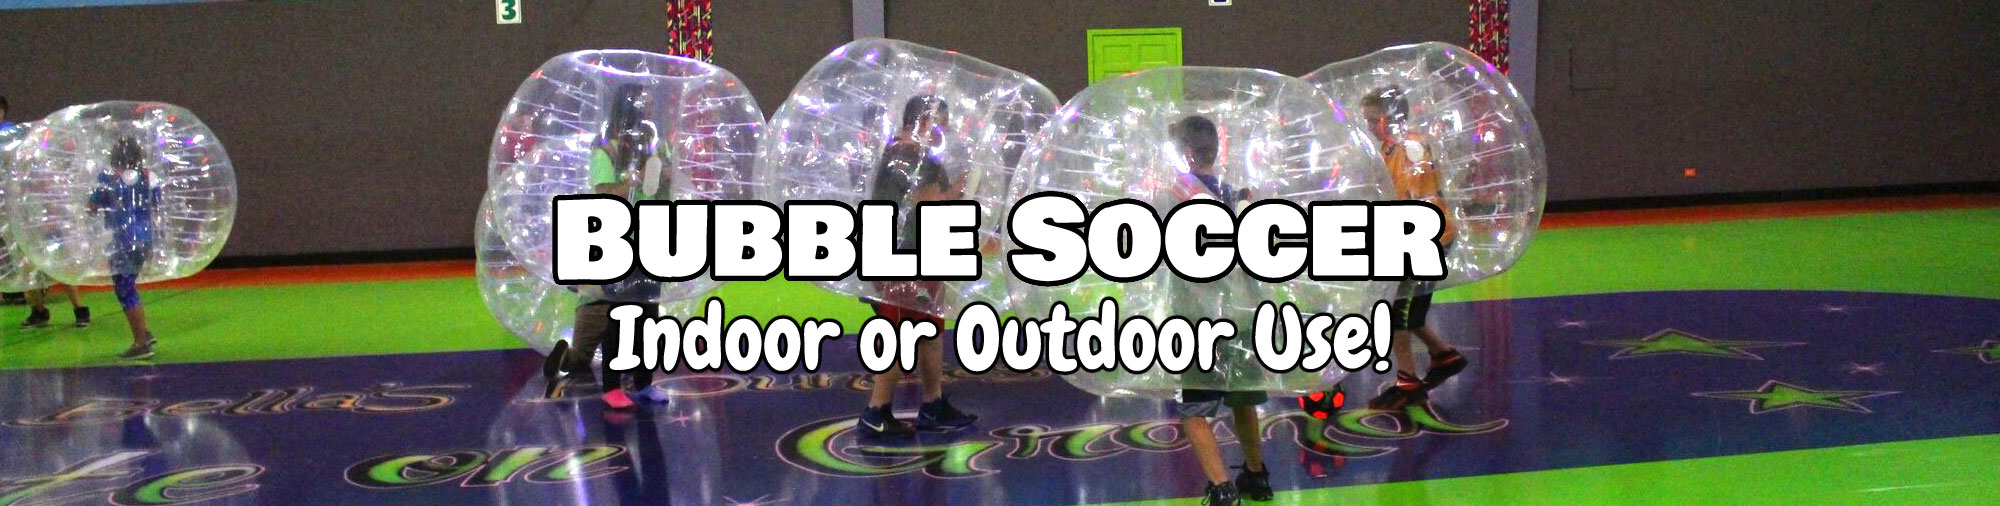 Bubble Soccer Rental